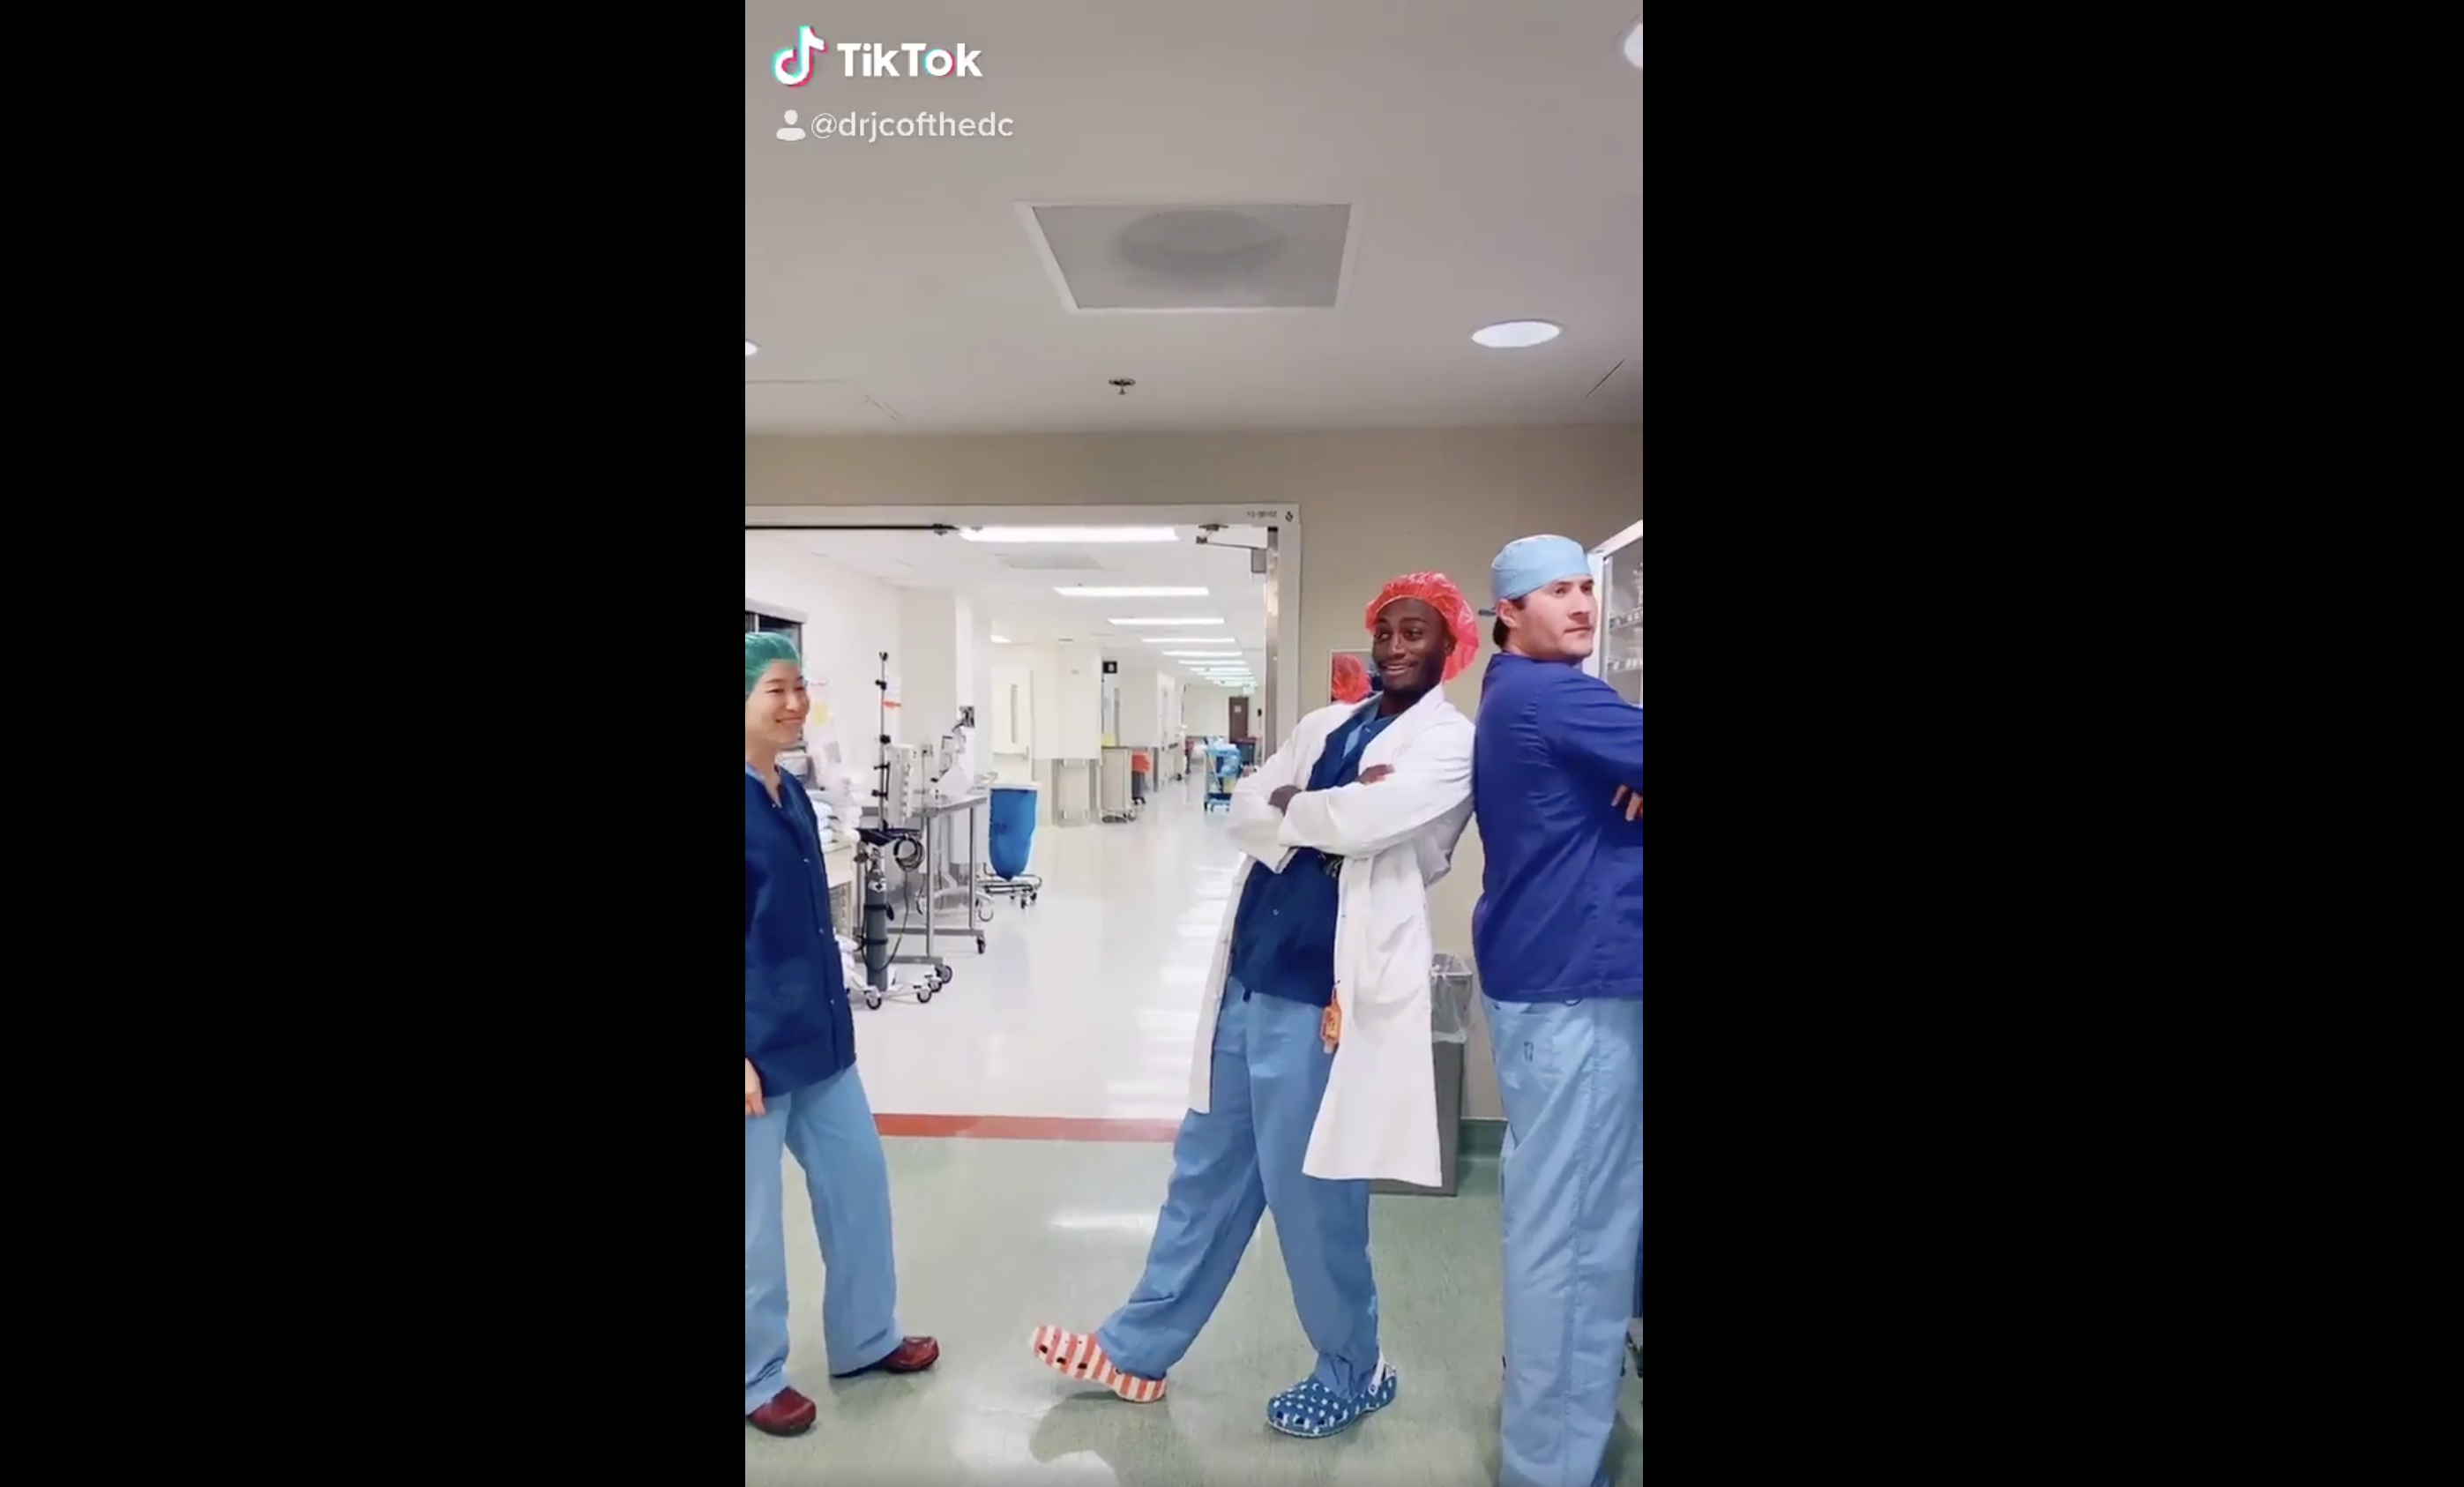 Doctor's dance moves go viral on social media